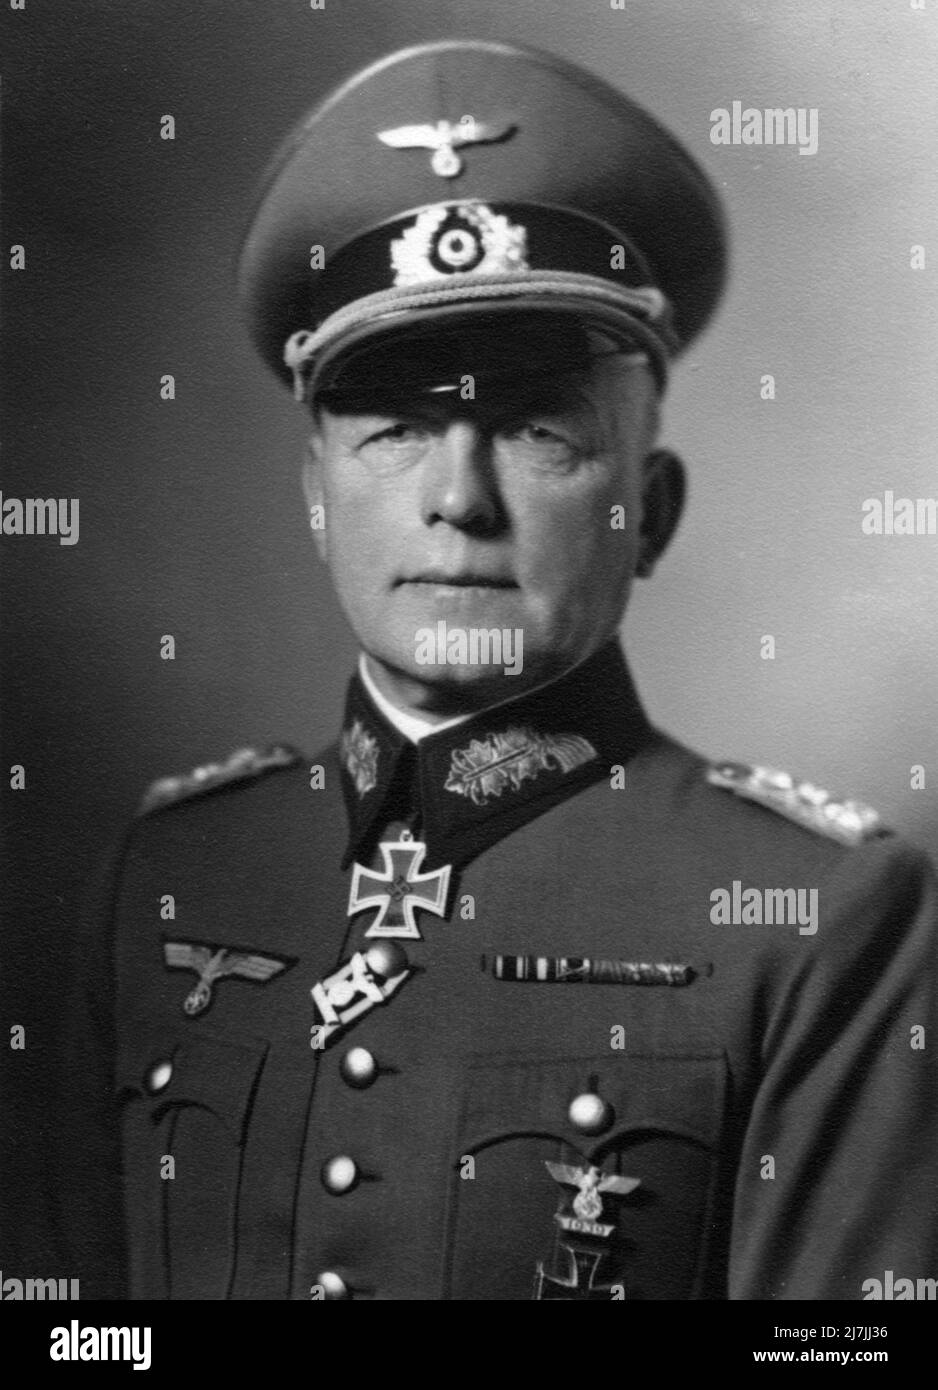 Paul Ludwig Ewald von Kleist , ein deutscher Feldmarschall während des Zweiten Weltkriegs Er war Oberbefehlshaber der Armeegruppe A in den letzten Tagen von Case Blue, der deutschen Sommeroffensive 1942 in Südrussland. Stockfoto